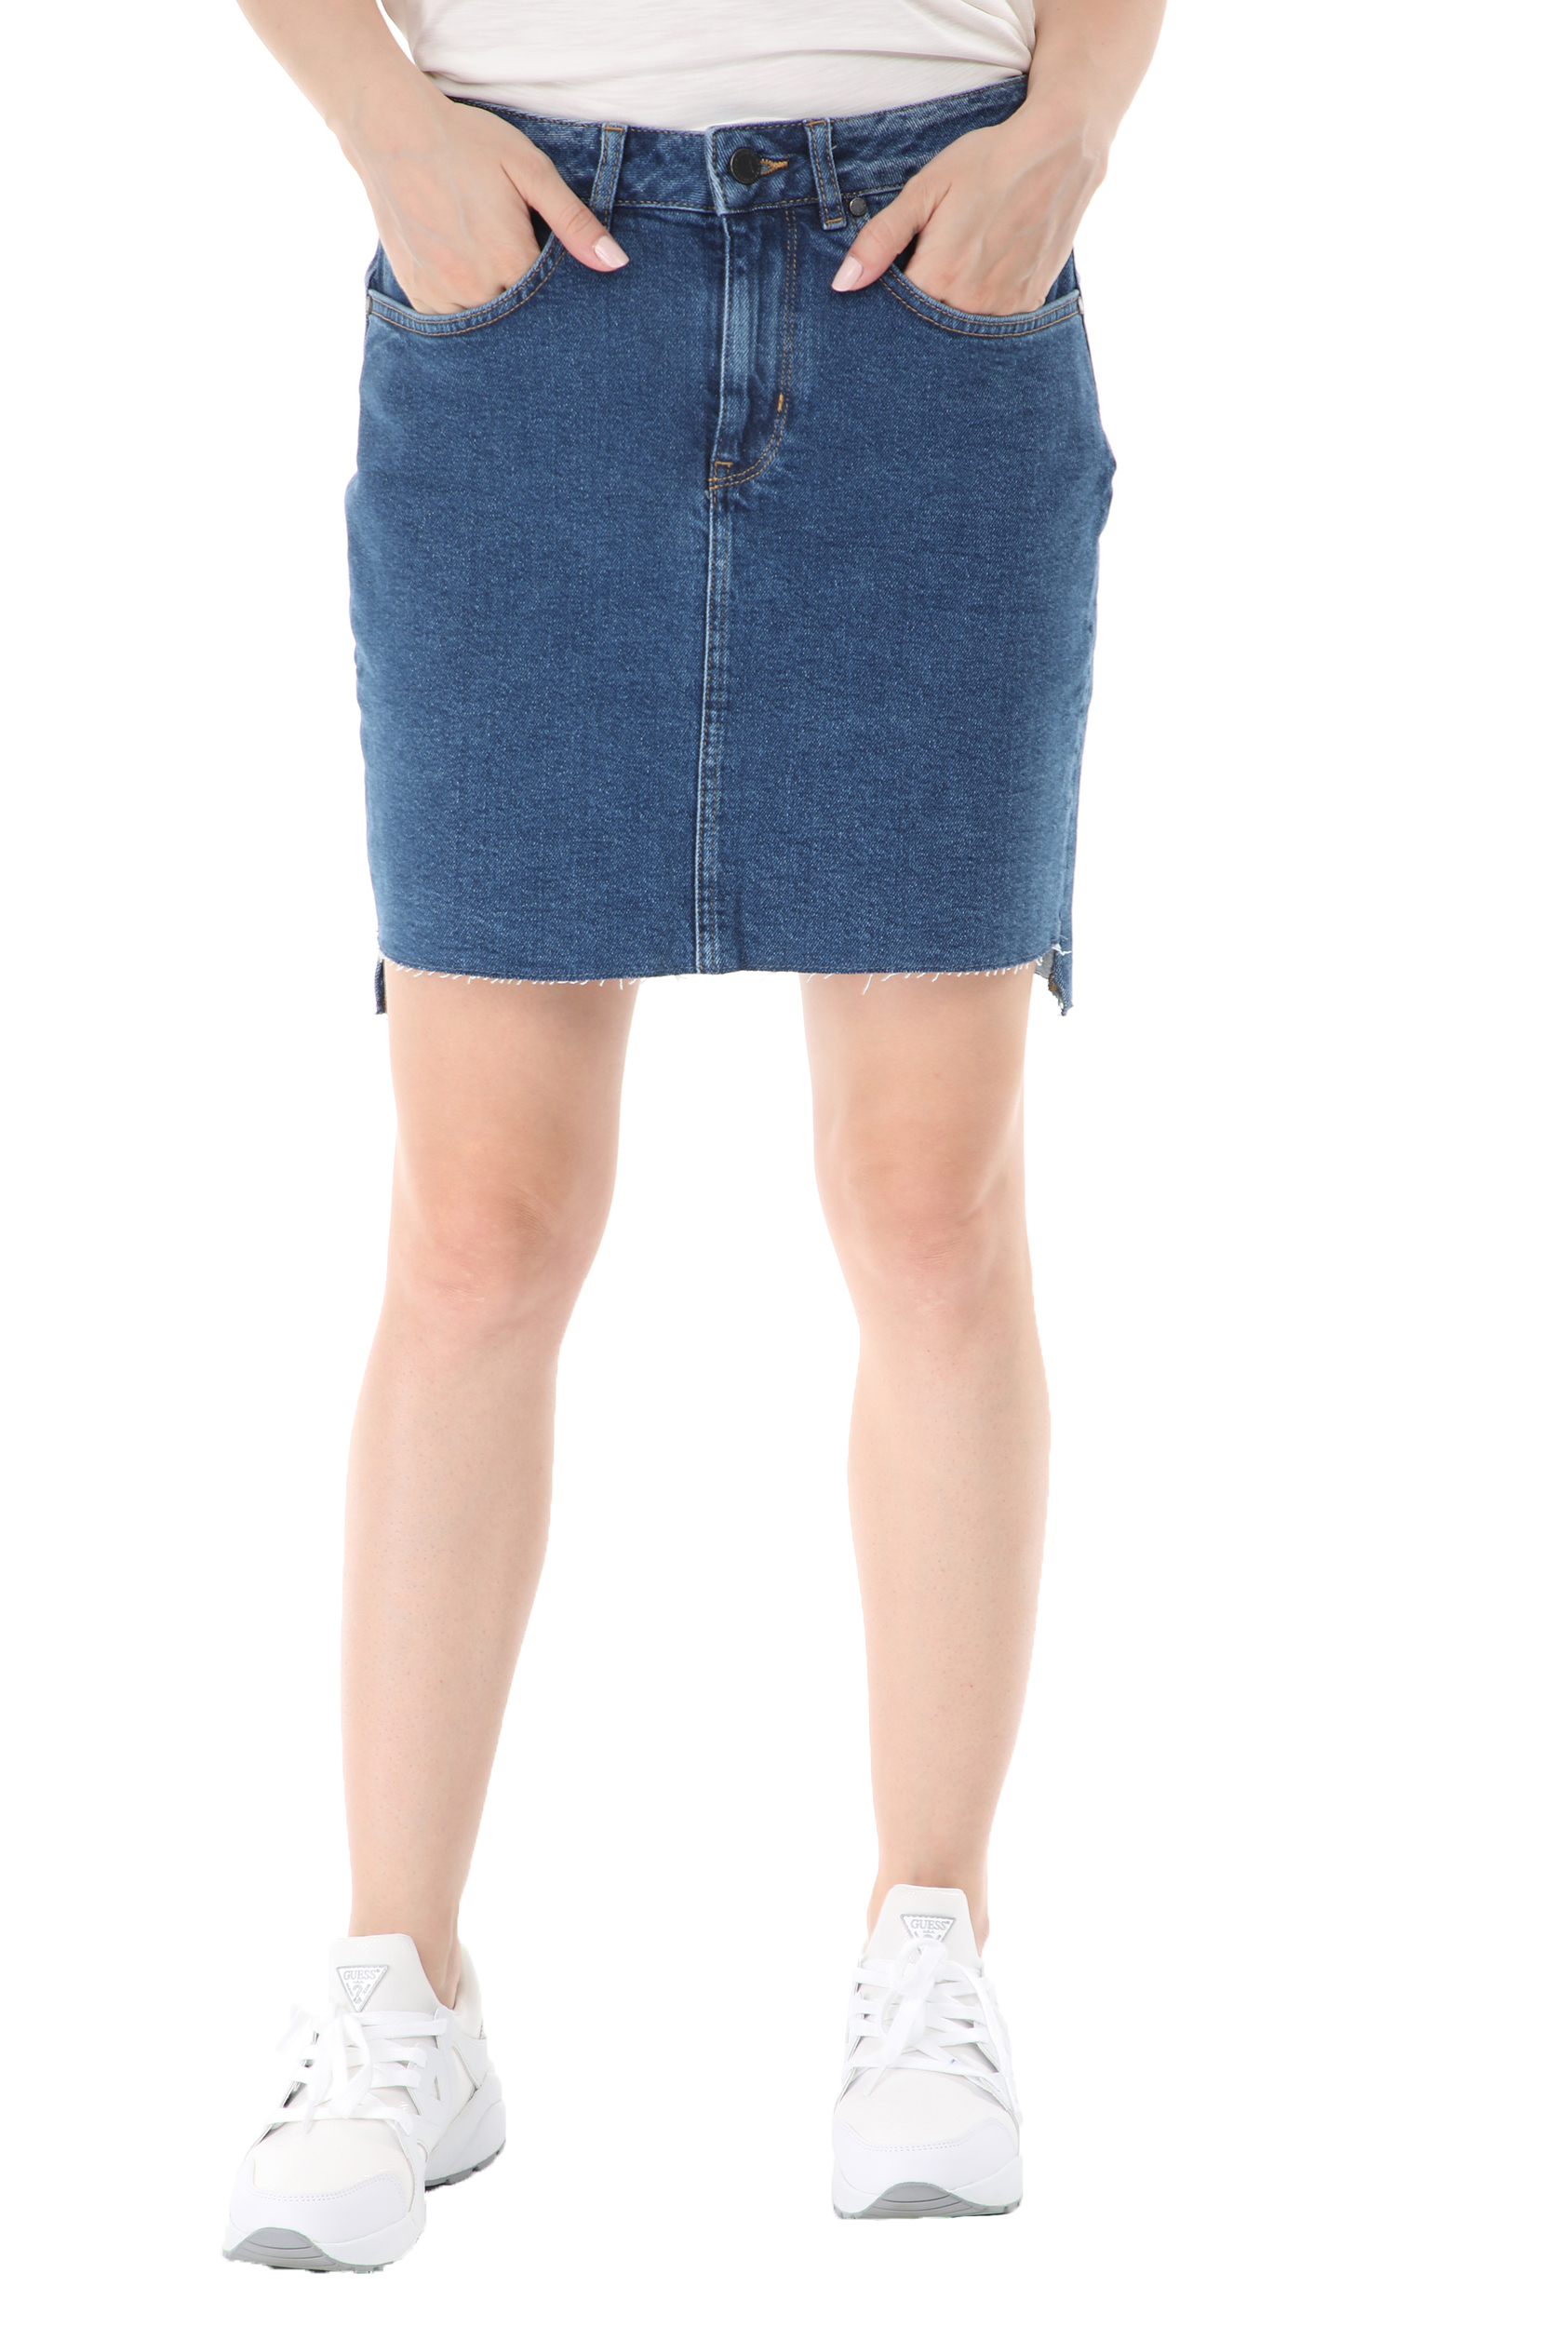 Γυναικεία/Ρούχα/Φούστες/Μίνι SUPERDRY - Γυναικεία jean mini φούστα SUPERDRY D2 μπλε